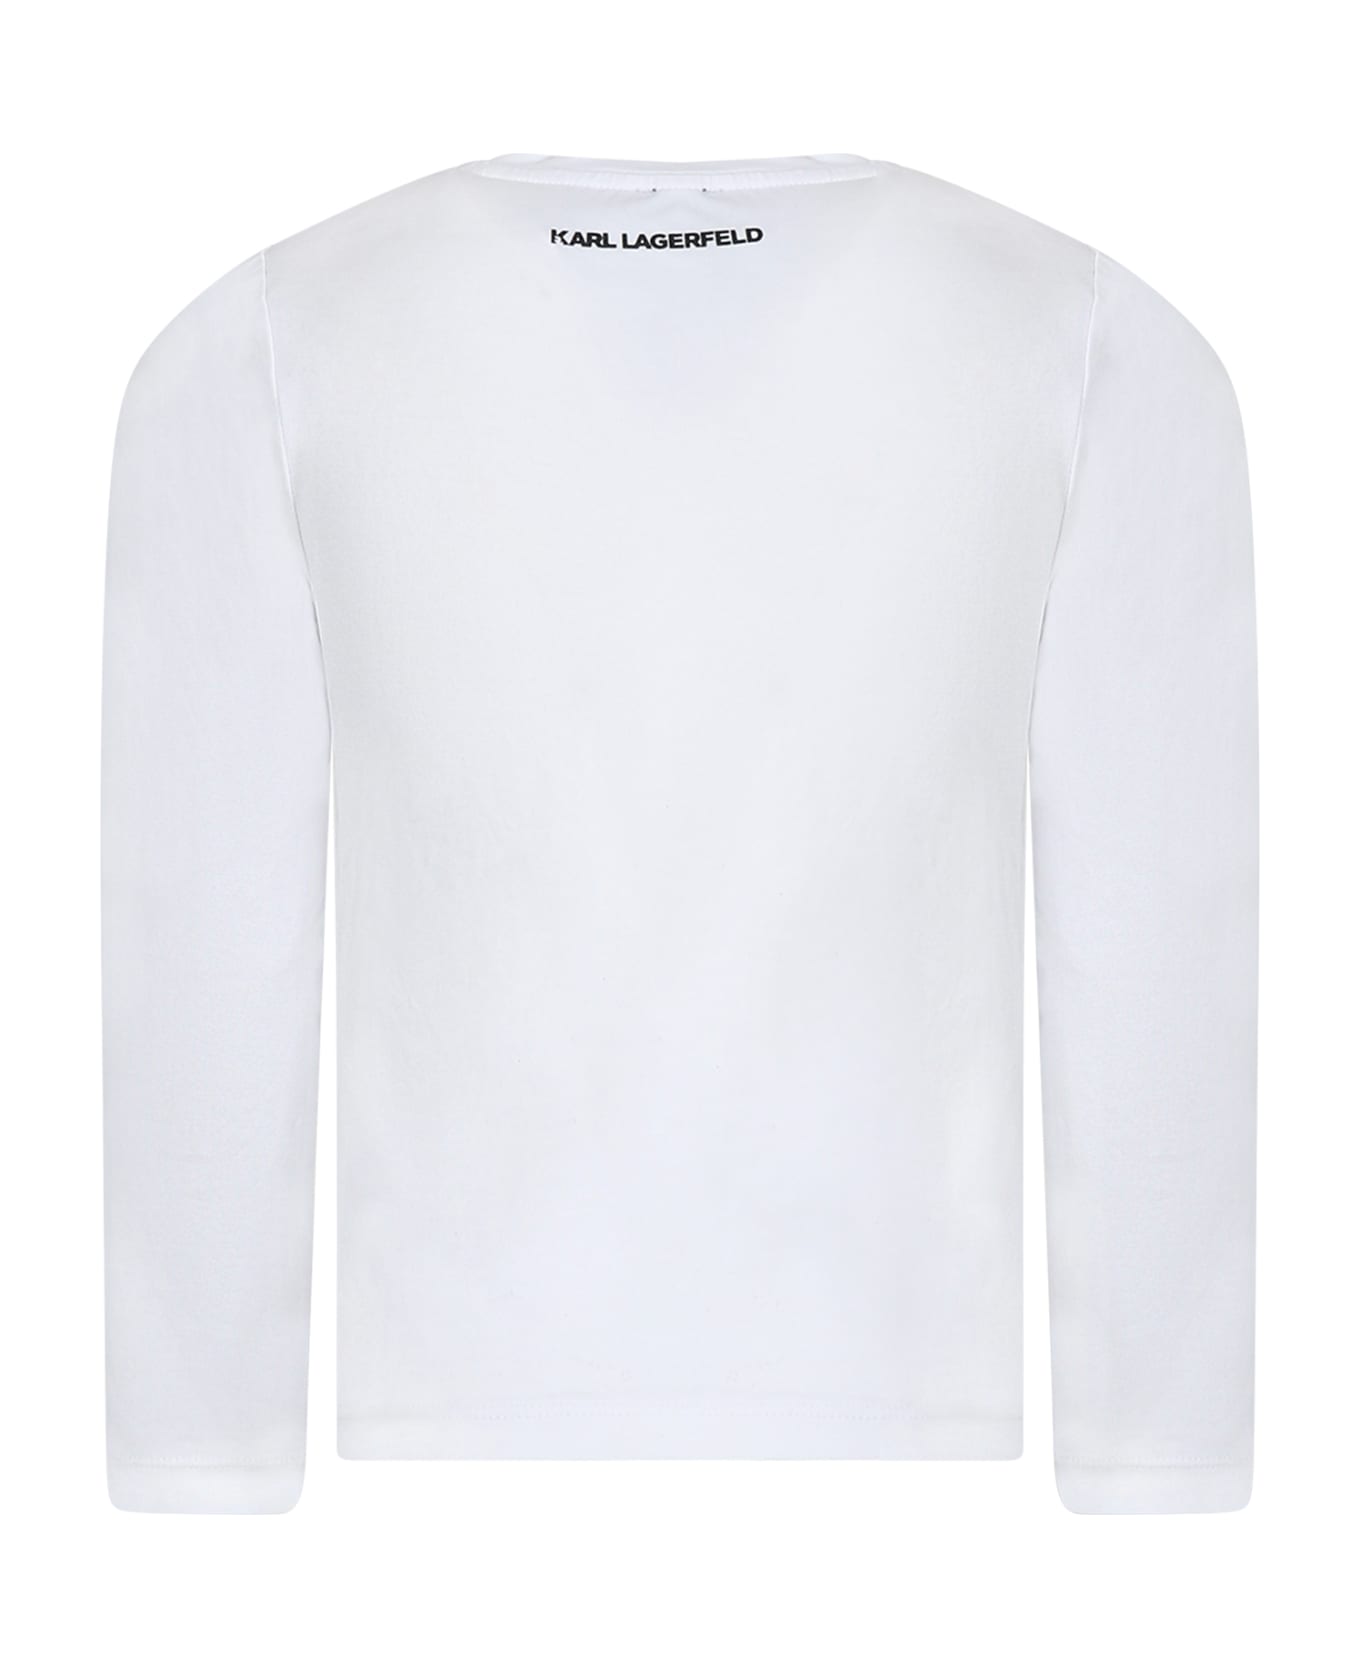 Karl Lagerfeld Kids White T-shirt For Girl - White